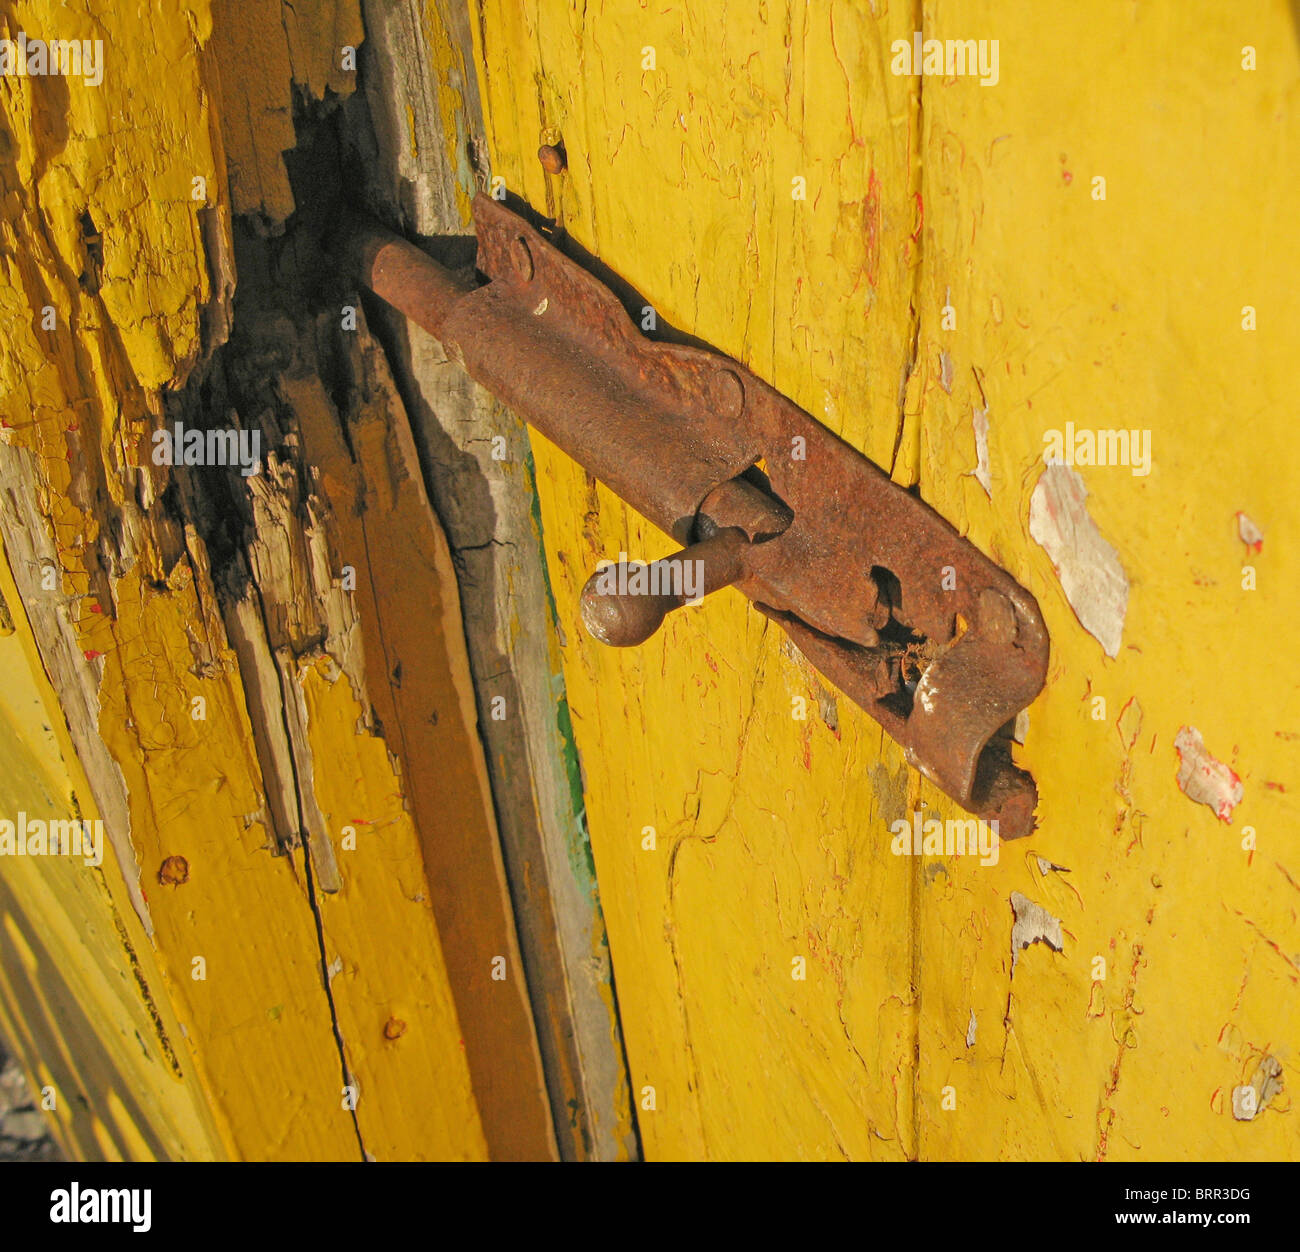 Boulon rouillé verrouillé dans une porte en bois jaune brisée Banque D'Images